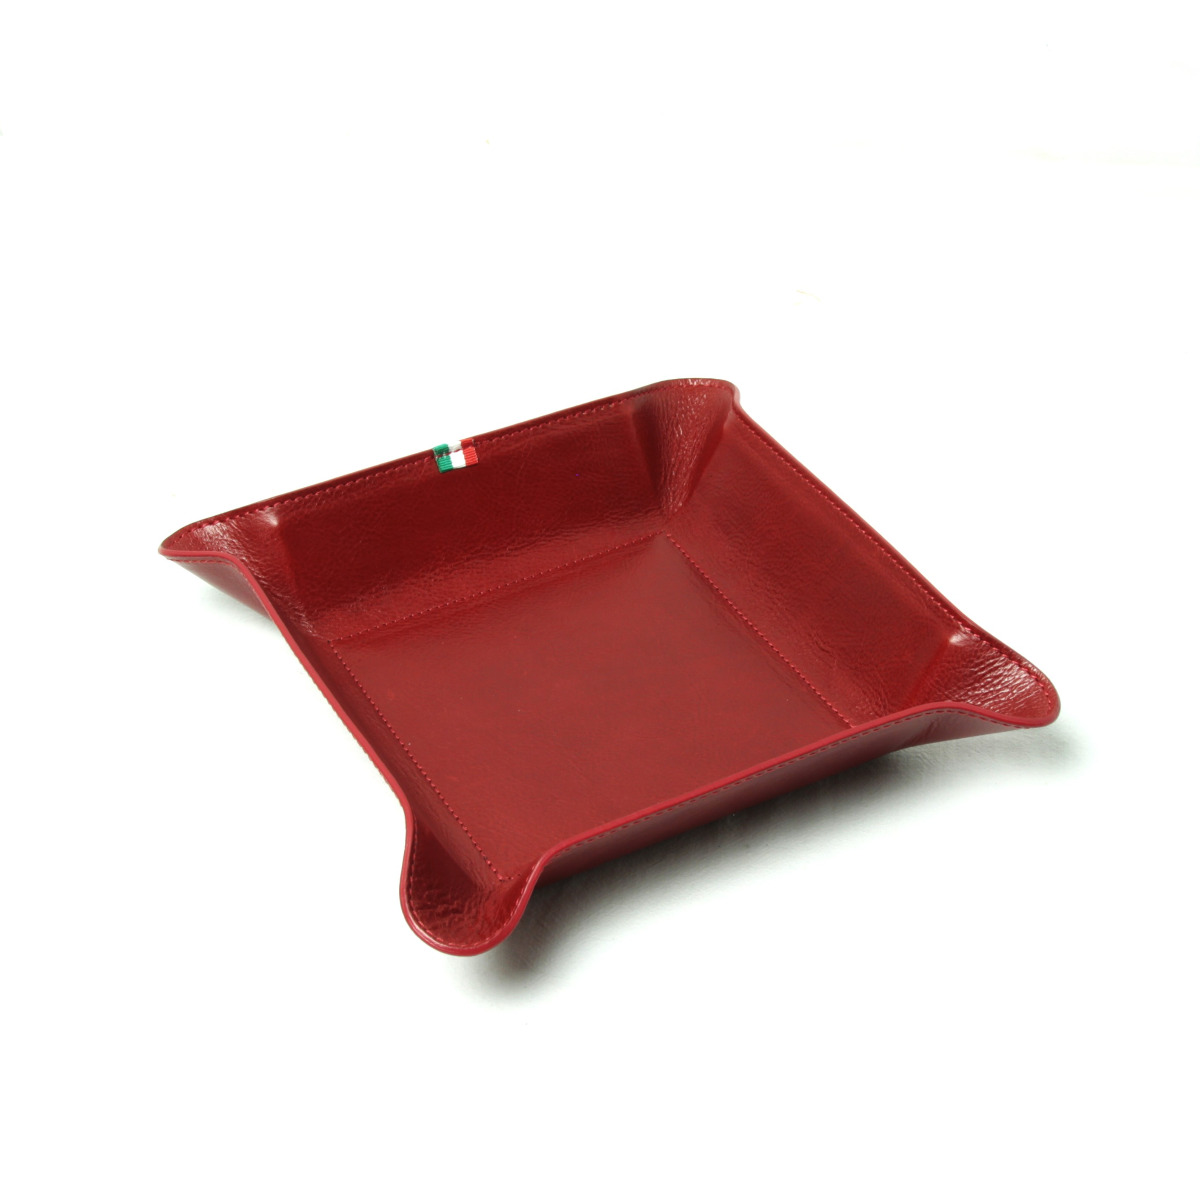 Full grain large valet tray - red|751005RO|Old Angler Firenze